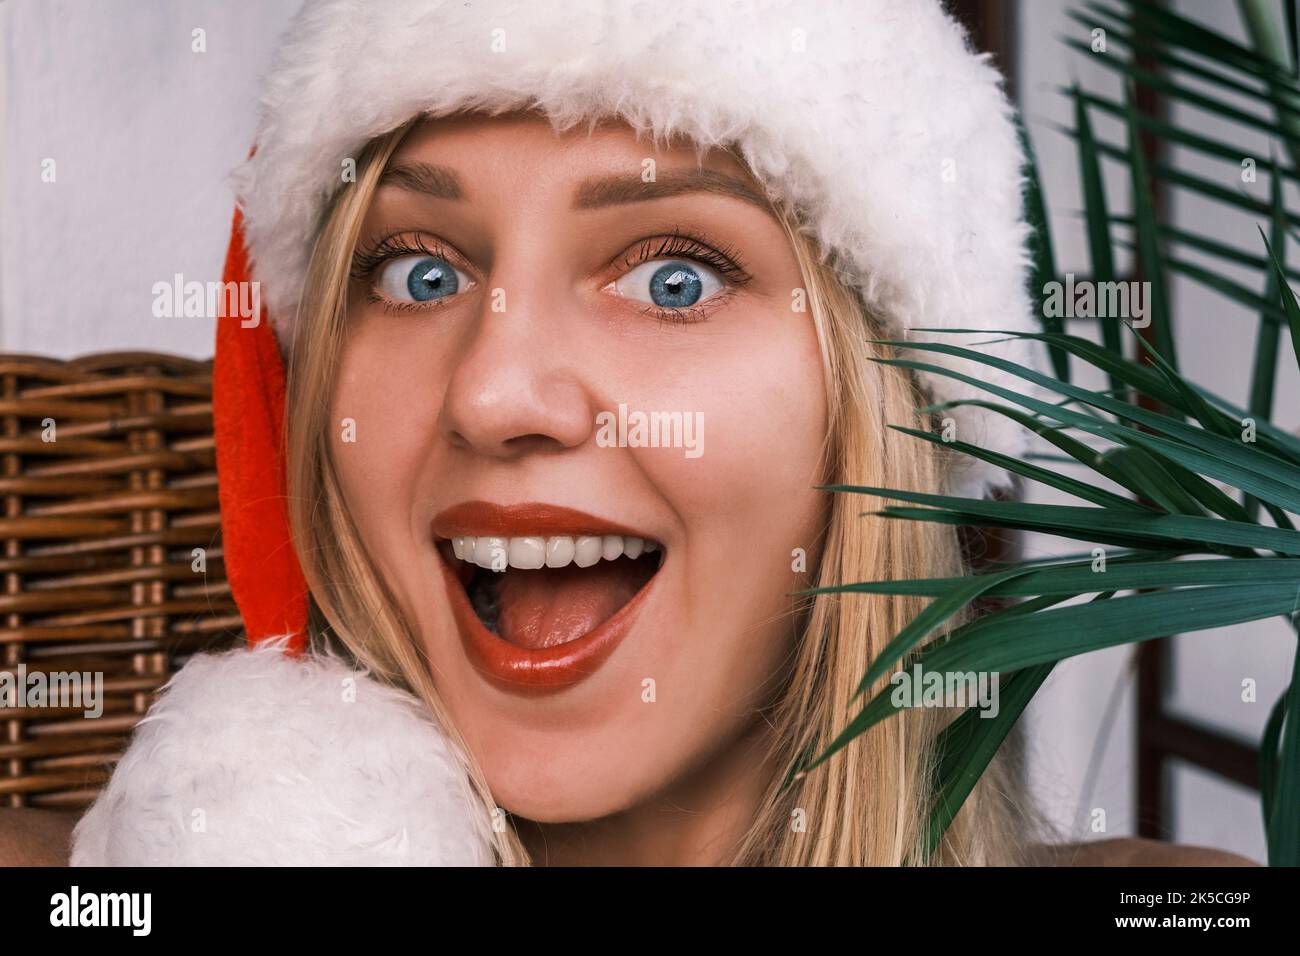 Divertente donna bionda sorridente che indossa il cappello di Santa guardando in macchina fotografica con gli occhi sorpresi. Ragazza che celebra il Natale nei tropici. Atmosfera festiva Foto Stock